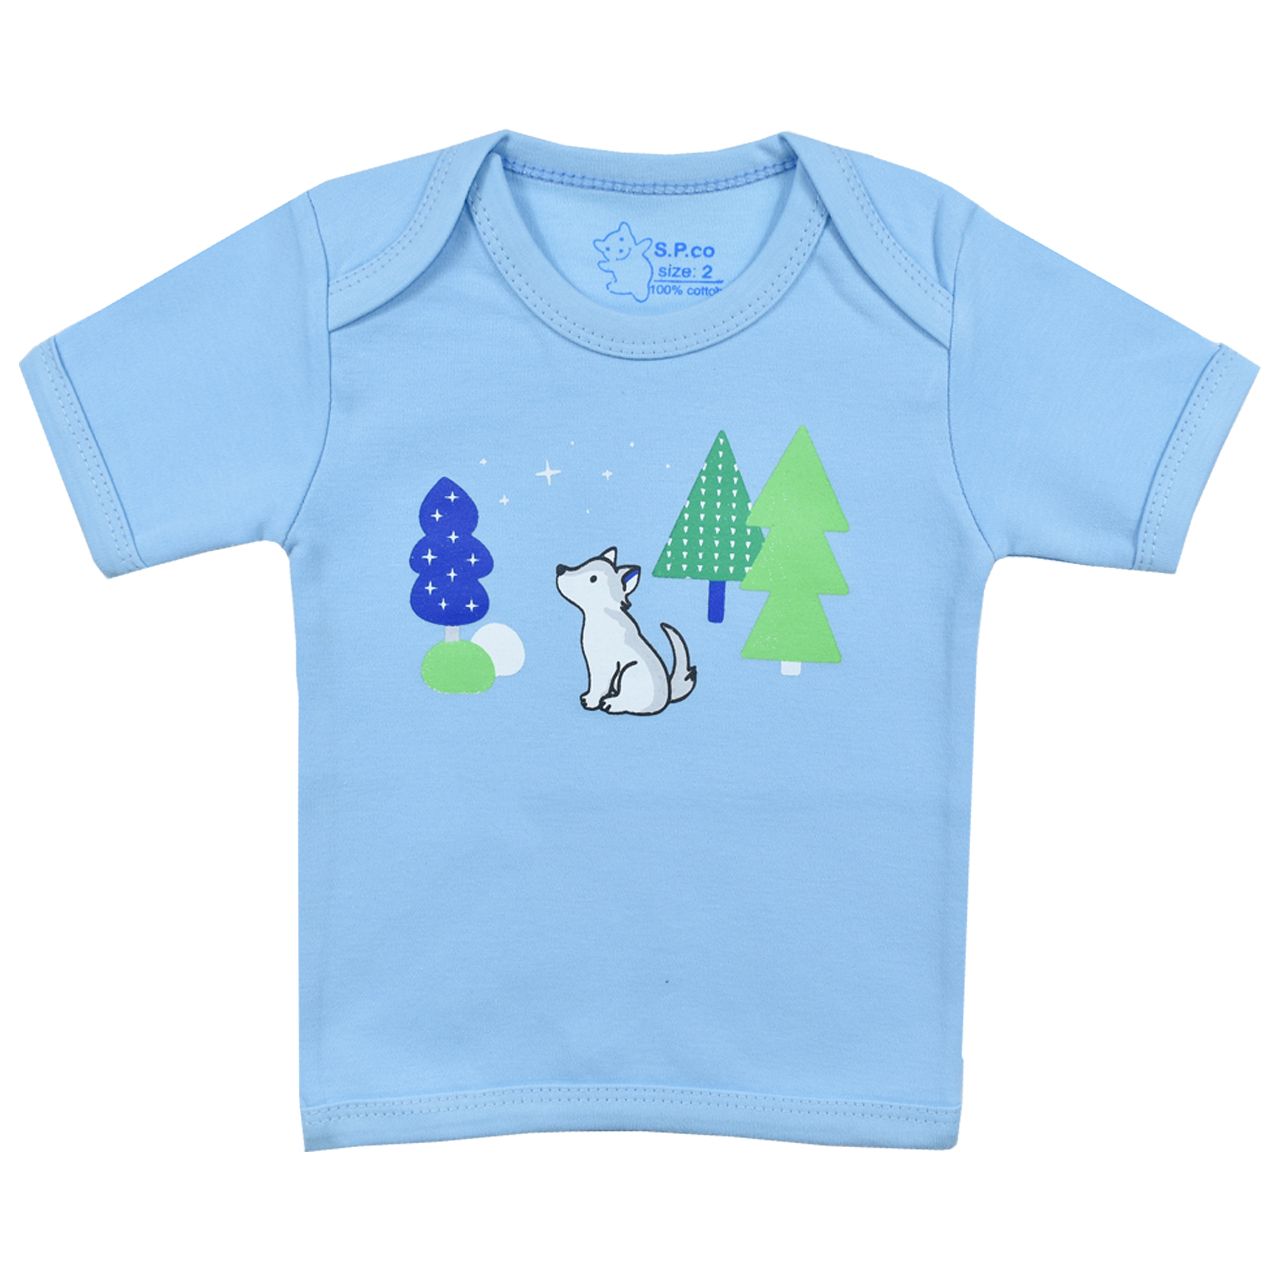 تی شرت آستین کوتاه نوزادی اسپیکو کد 300 -1 بسته دو عددی -  - 5